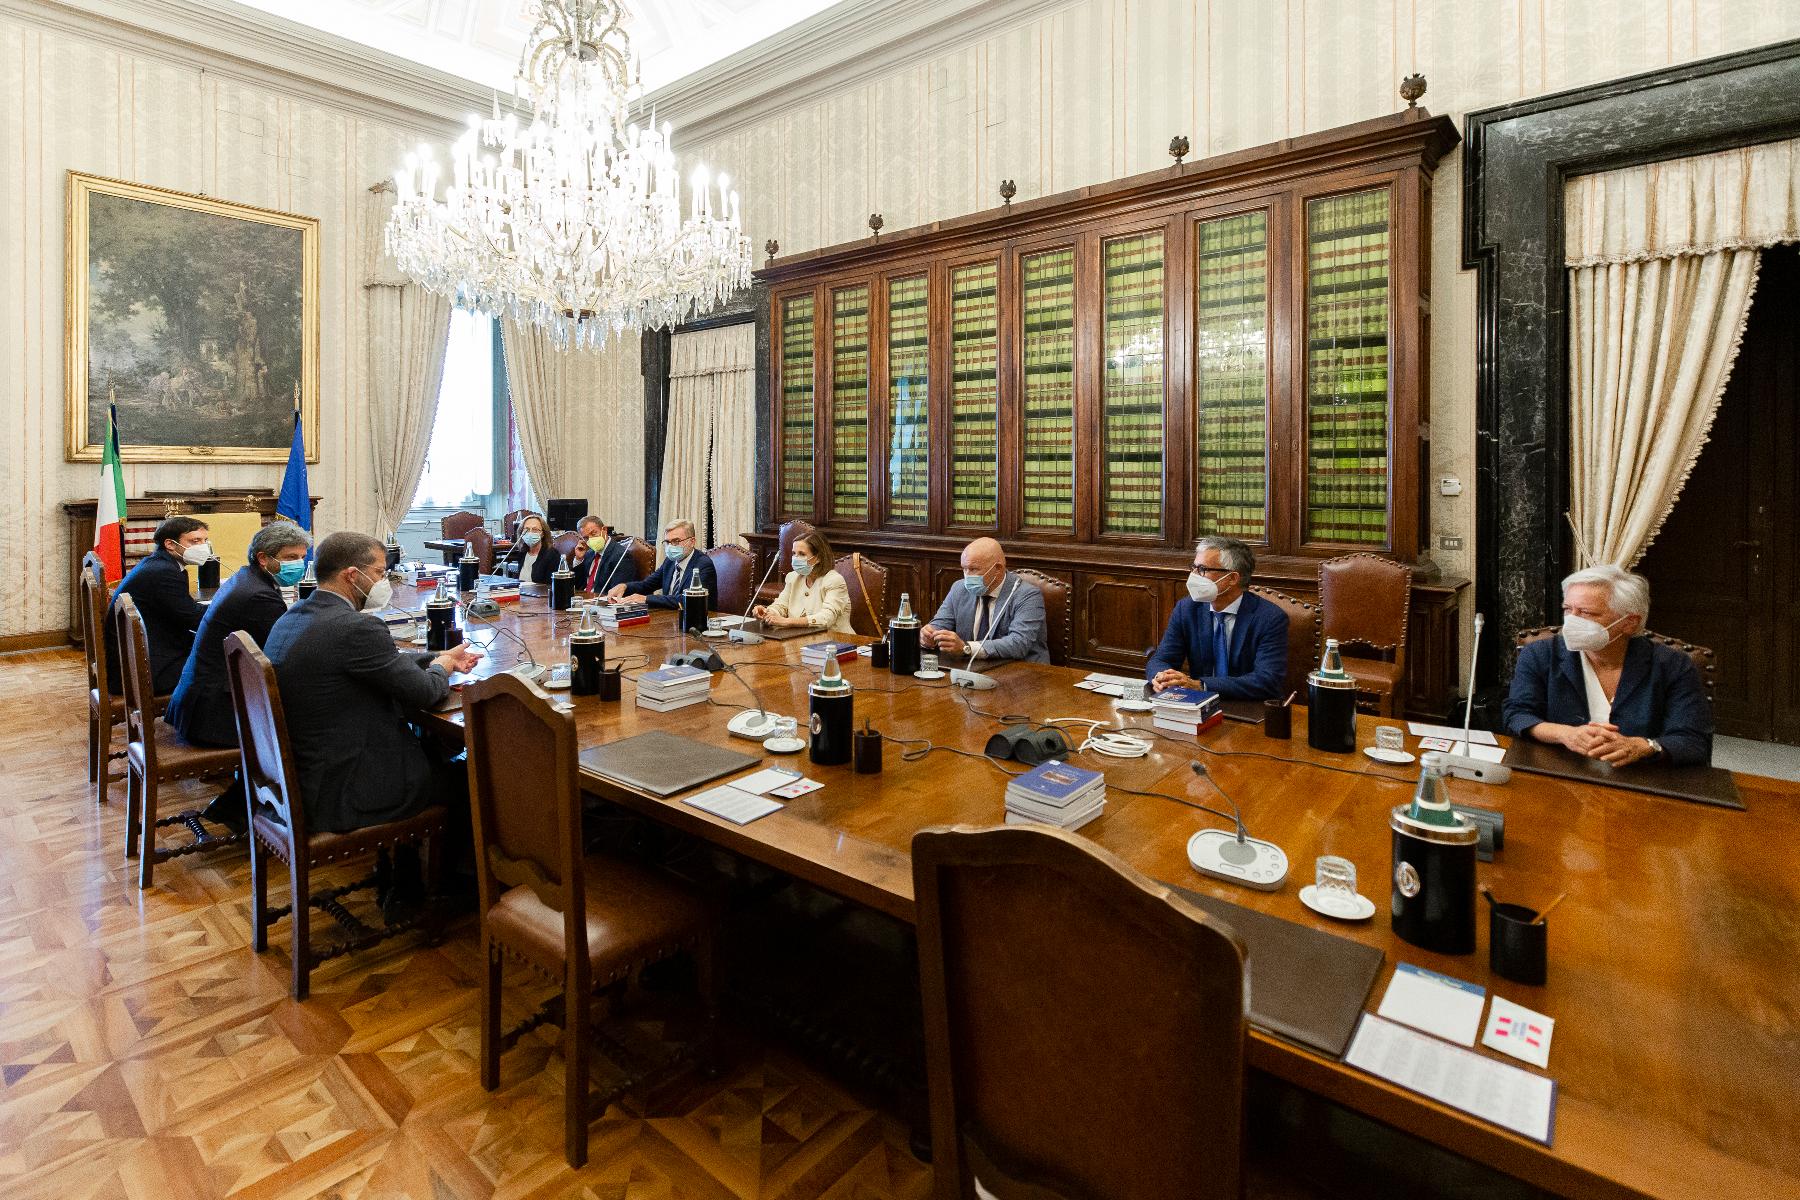 Il Presidente della Camera, Roberto Fico, ha incontrato una delegazione di familiari ed avvocati delle vittime della strage Moby Prince, avvenuta a Livorno il 10 aprile 1991, in cui morirono 140 persone.